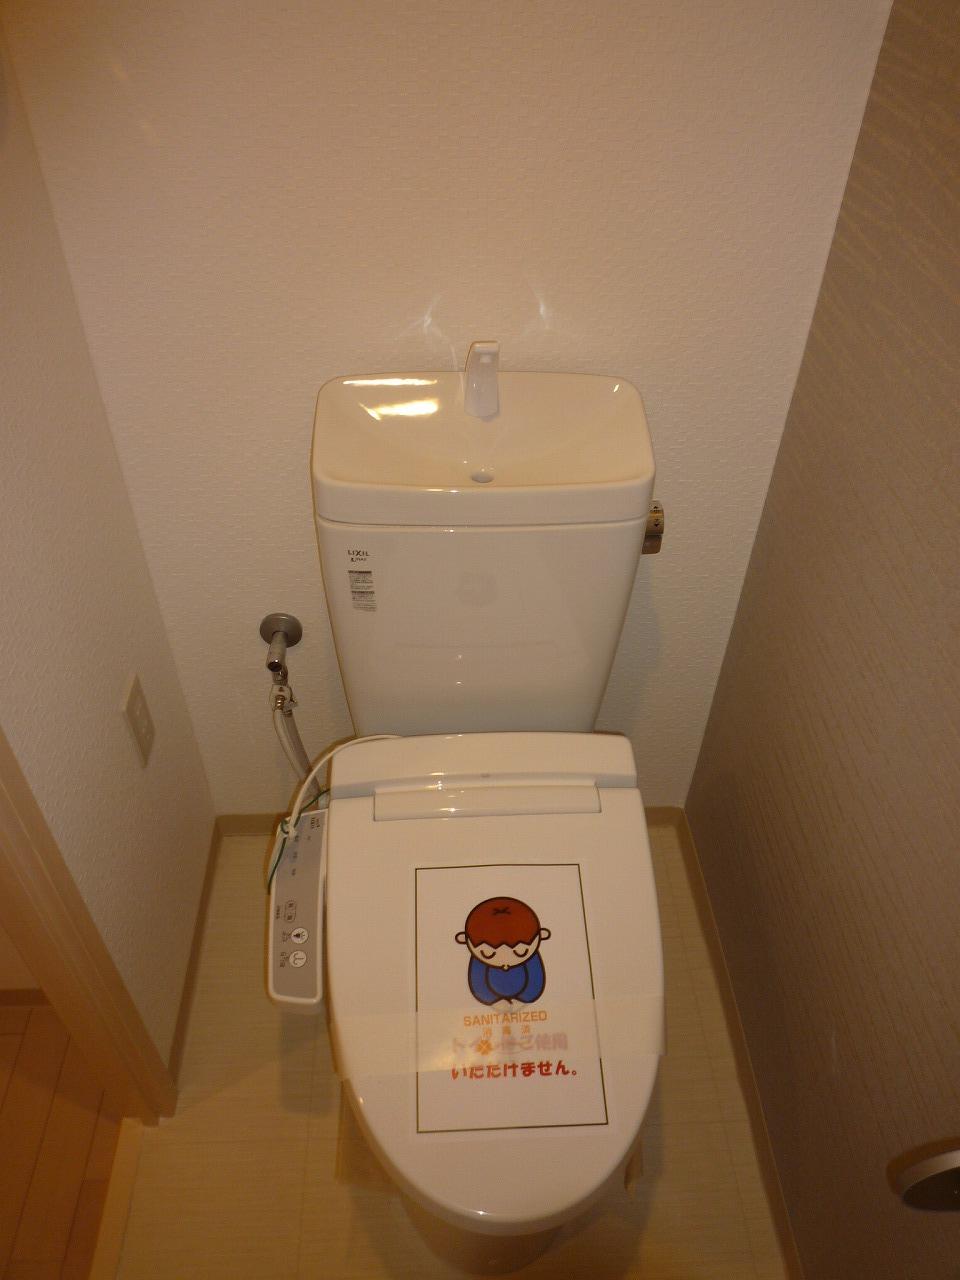 Toilet. Washlet toilet